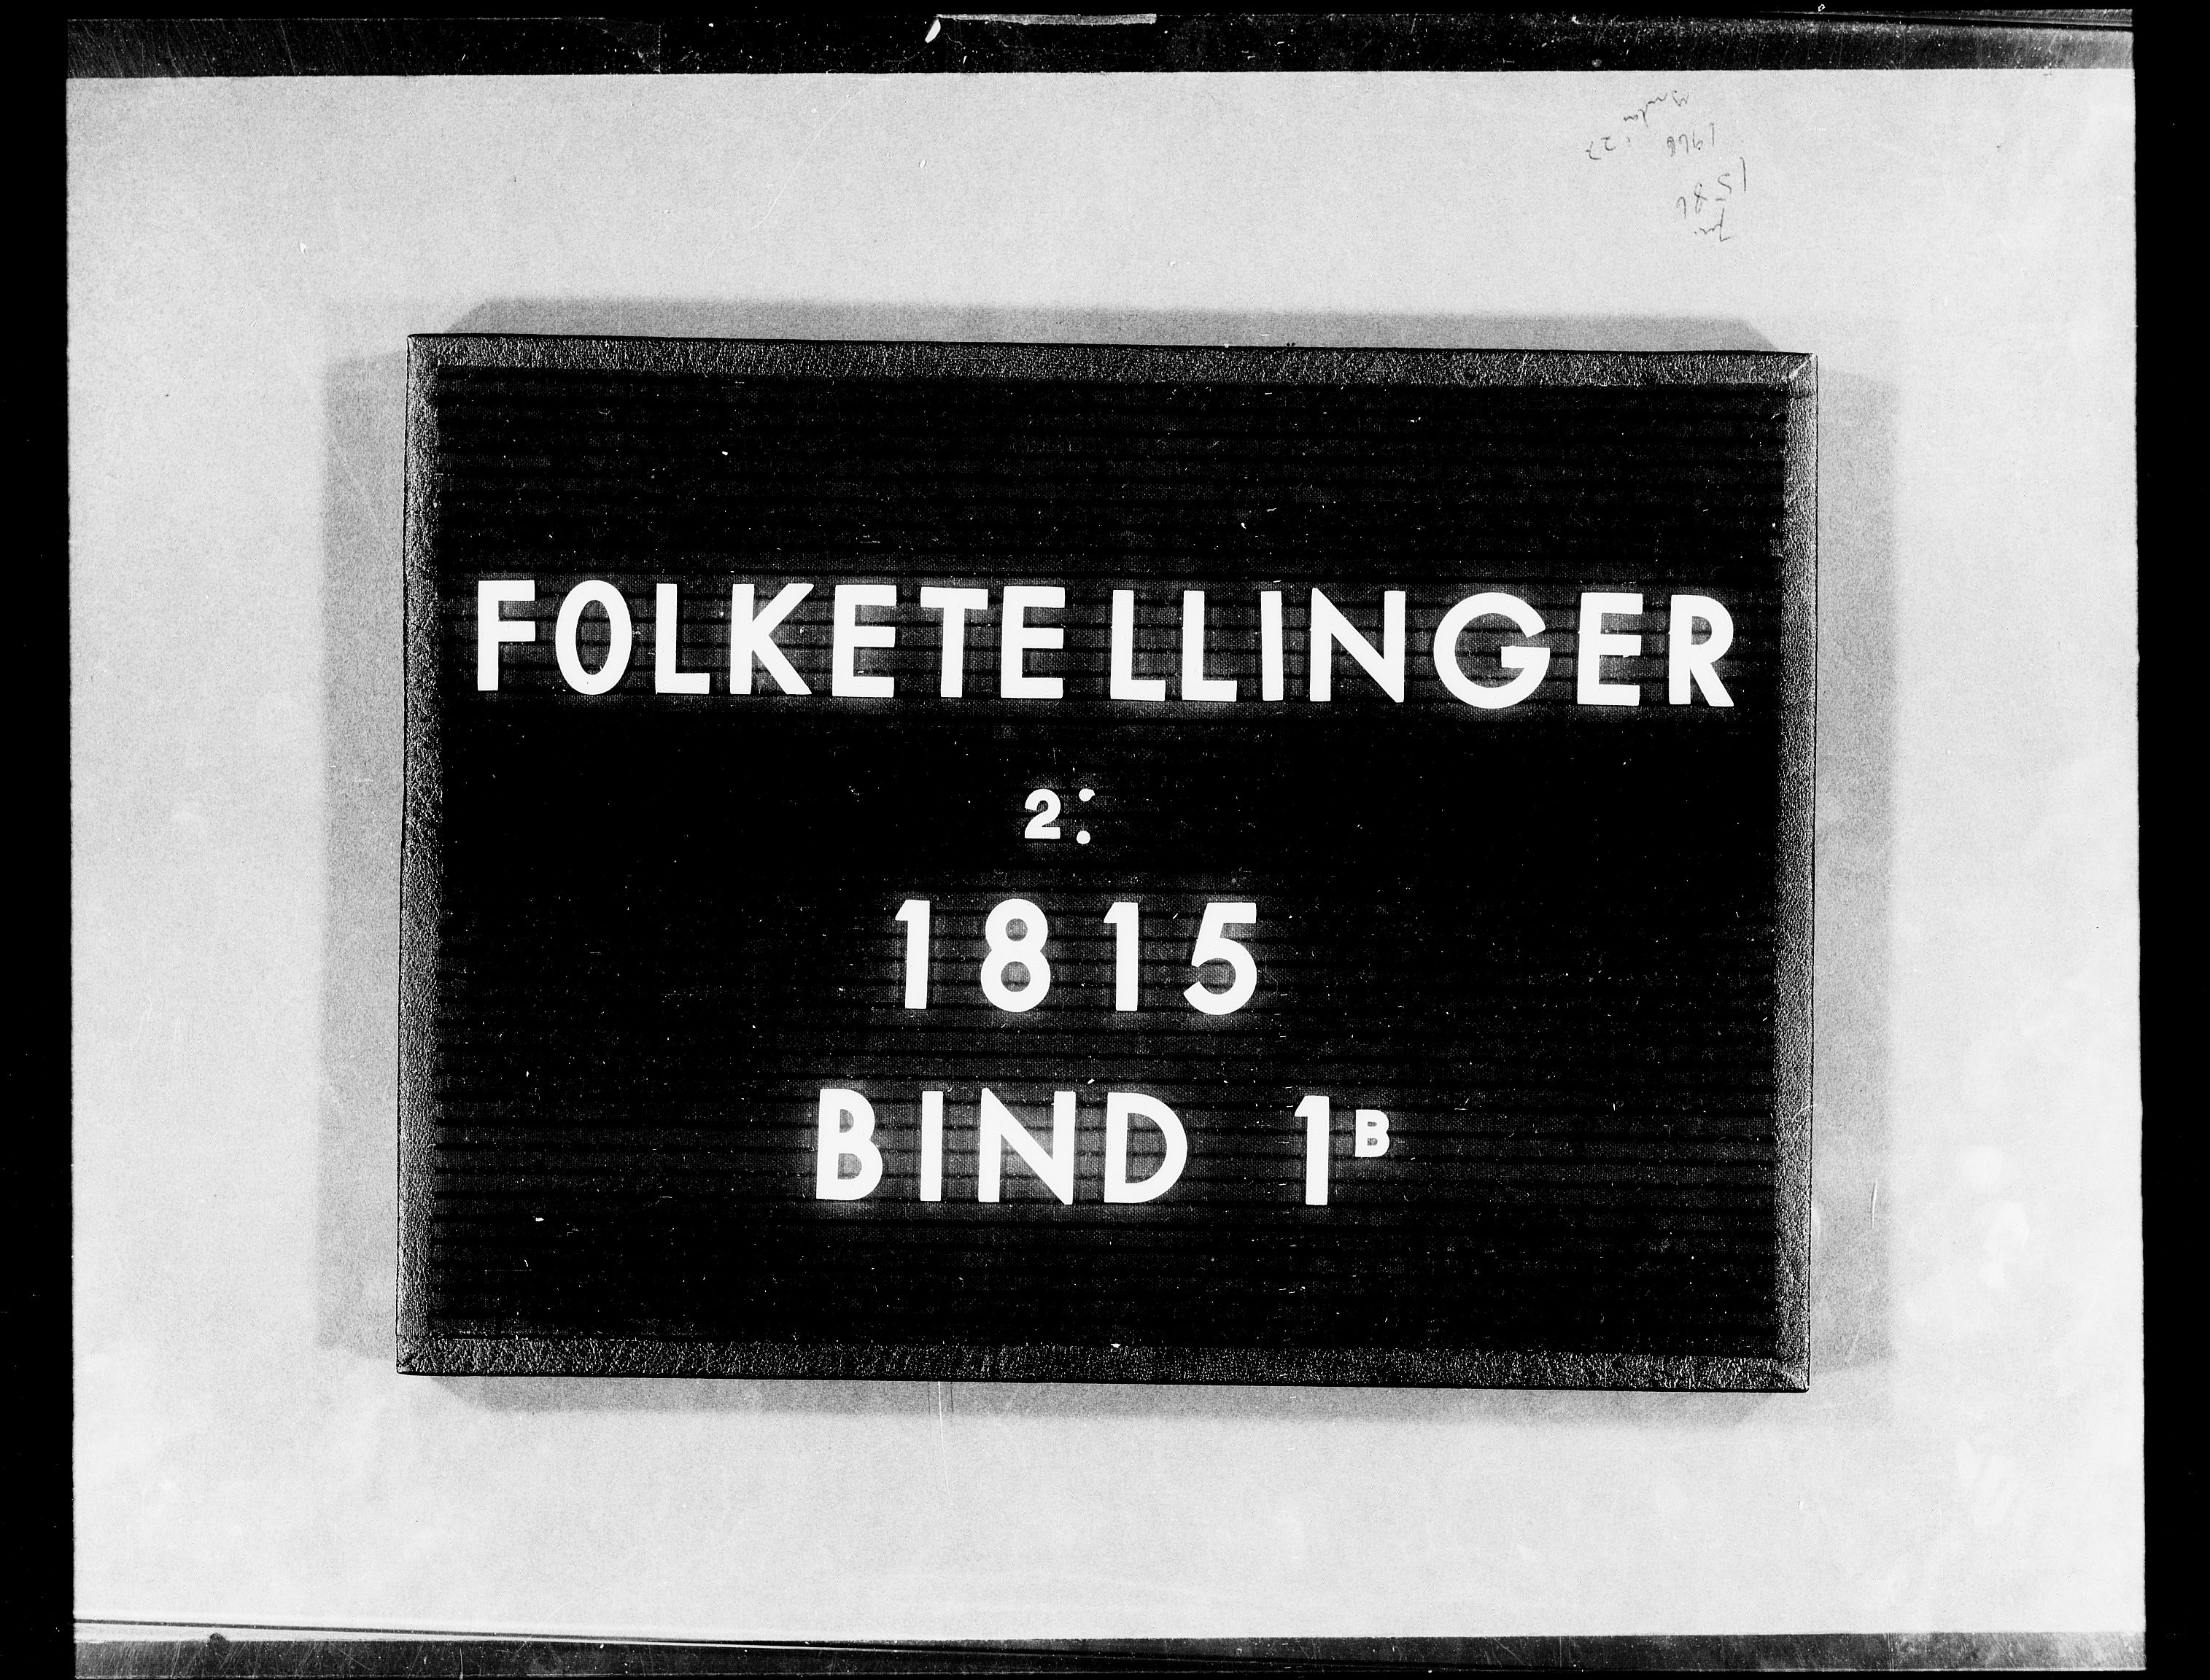 RA, Folketellingen 1815, bind 1b: Dypvåg prestegjeld, 1815, s. 1